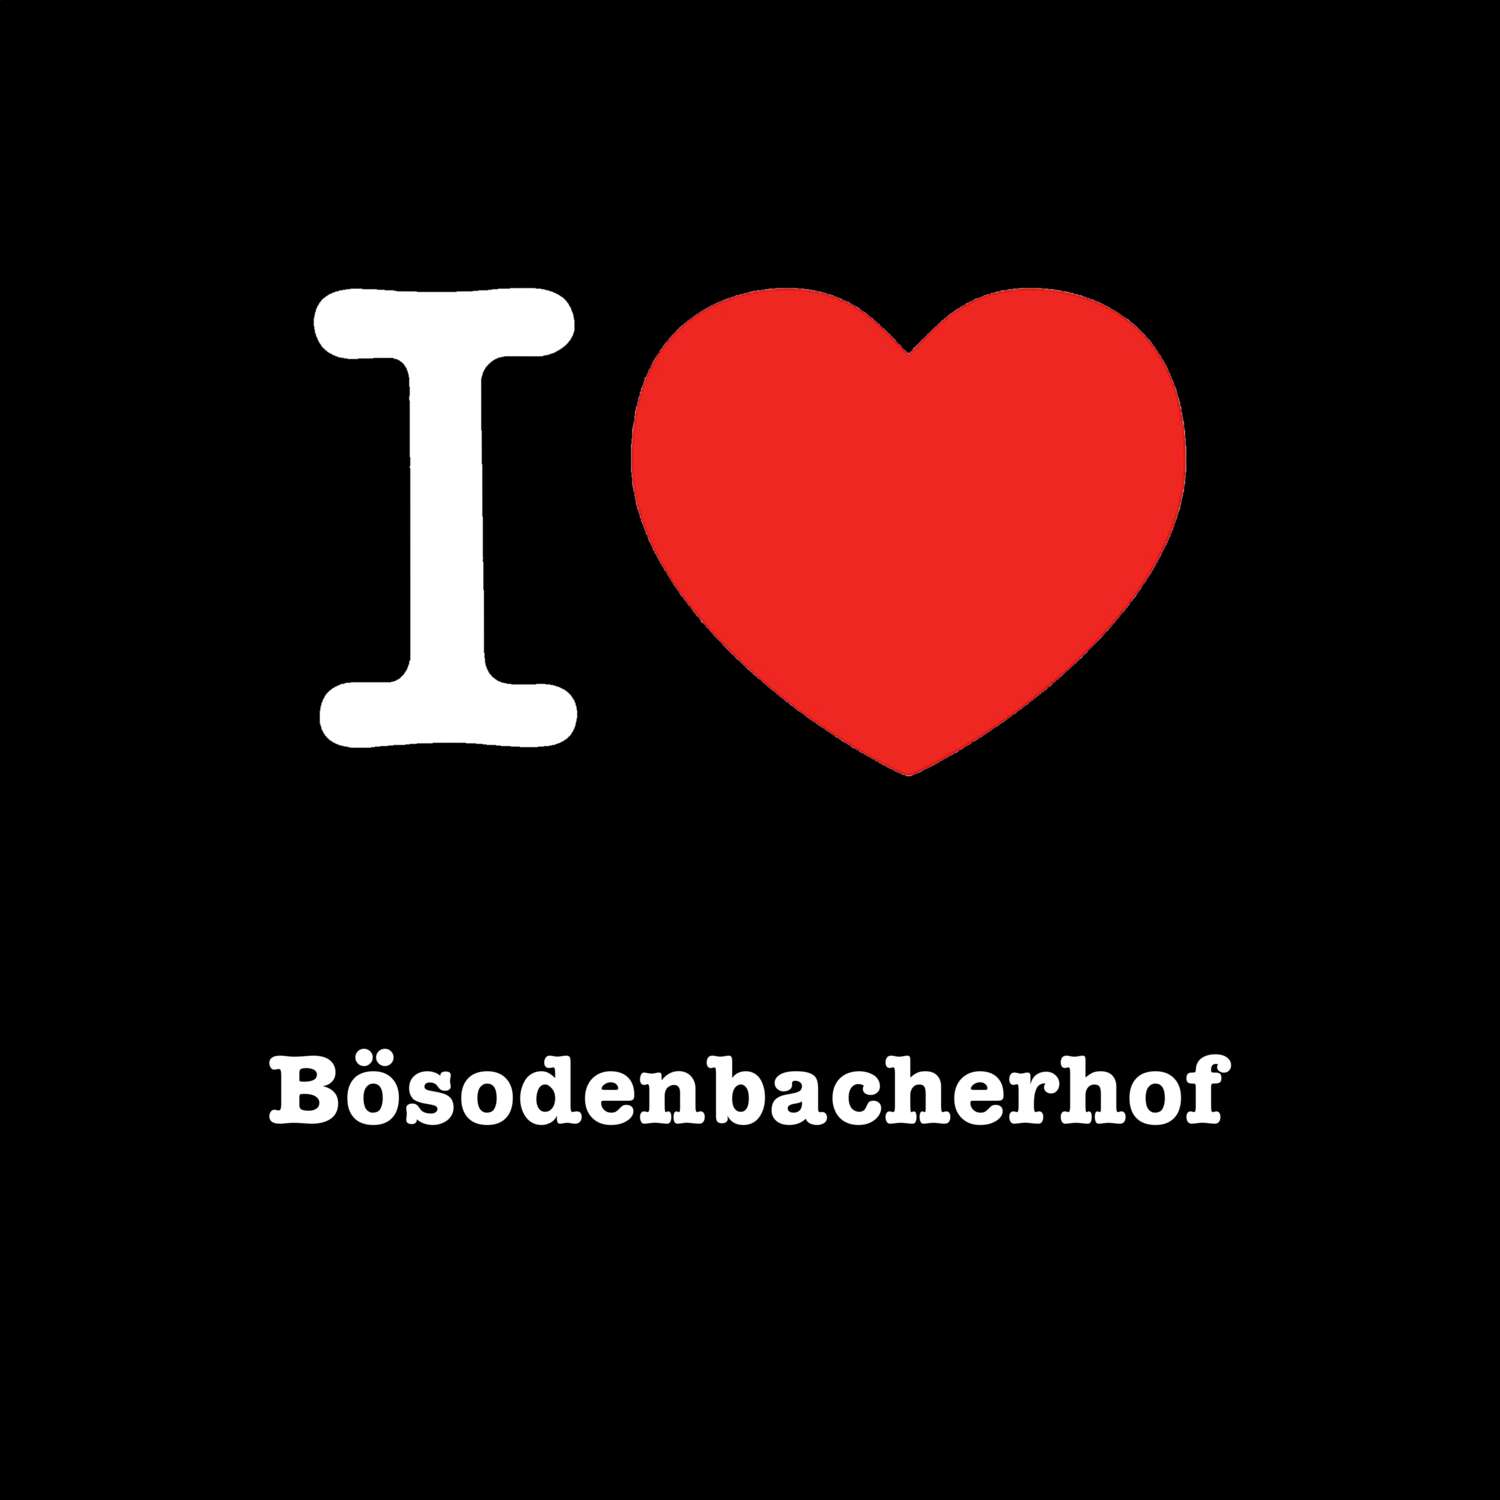 Bösodenbacherhof T-Shirt »I love«